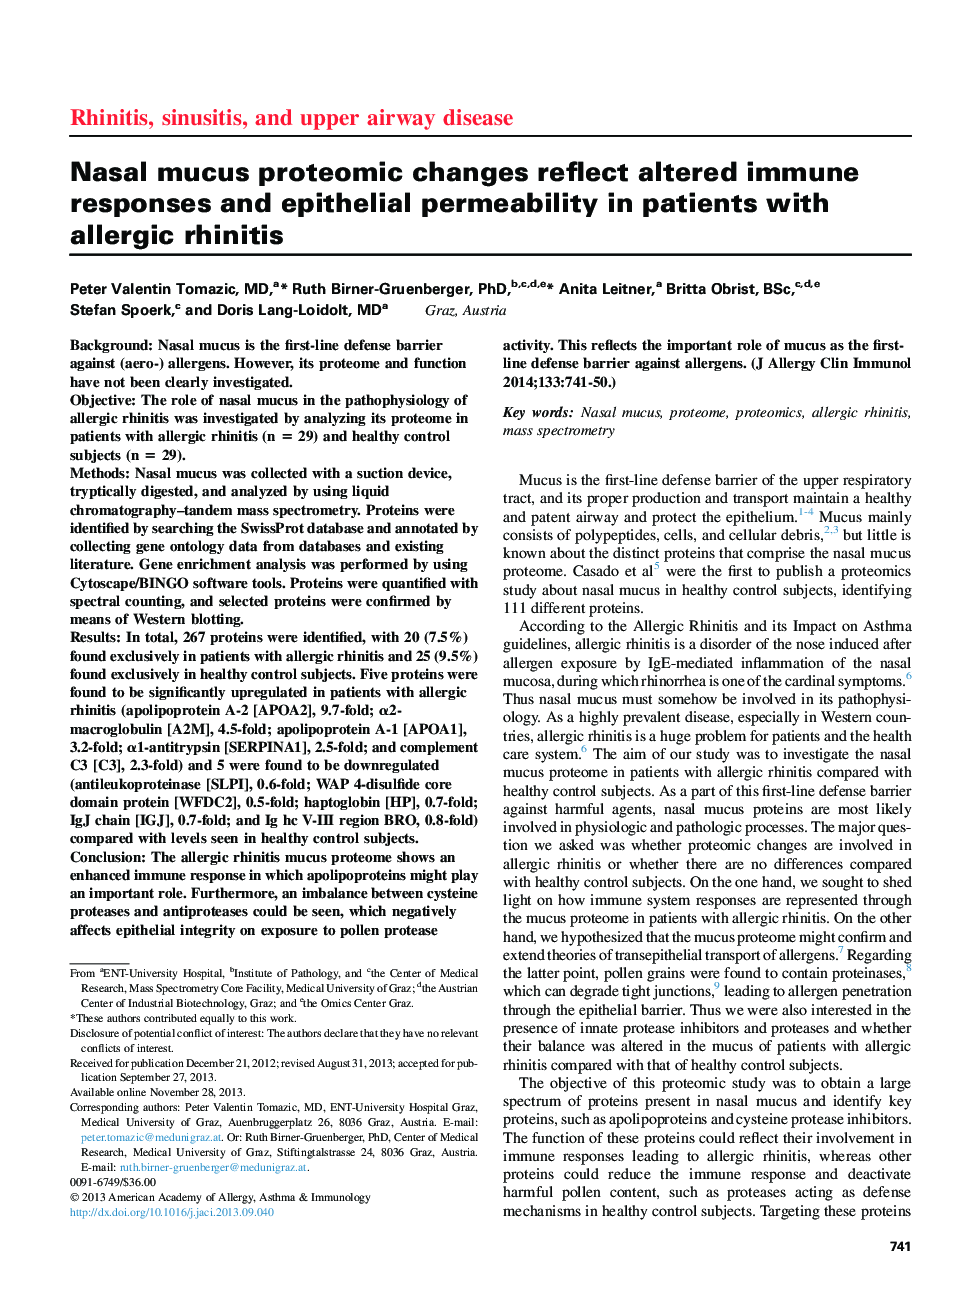 تغییرات پروتئومیک مخاط مخاطی منعکس کننده واکنش های ایمنی تغییر یافته و نفوذ پذیری اپیتلیال در بیماران مبتلا به رینیت آلرژیک 